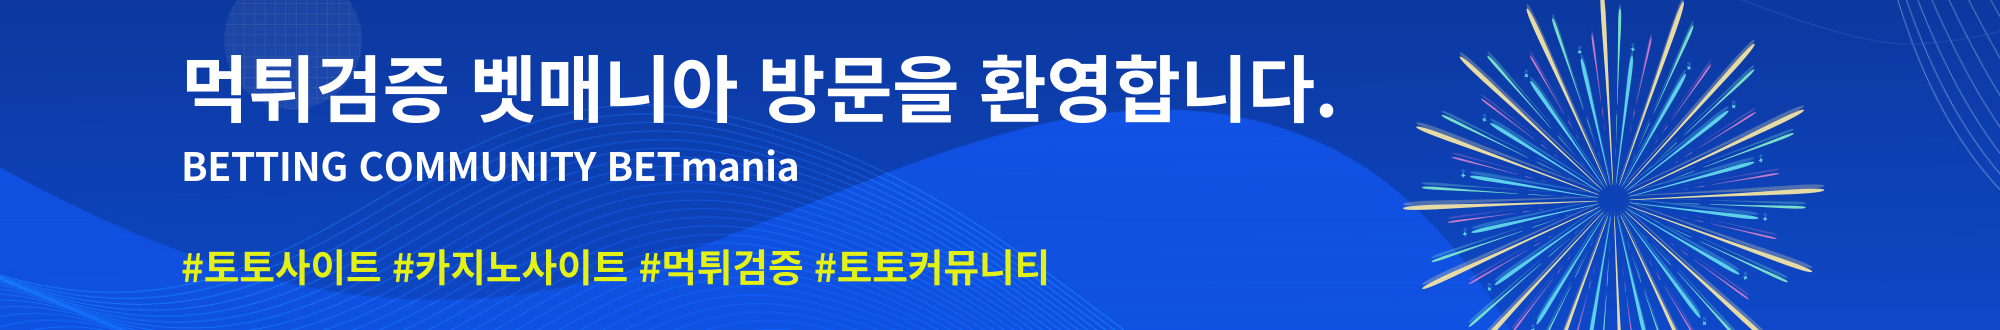 벳매니아 - 토토사이트 먹튀검증, 토토커뮤니티